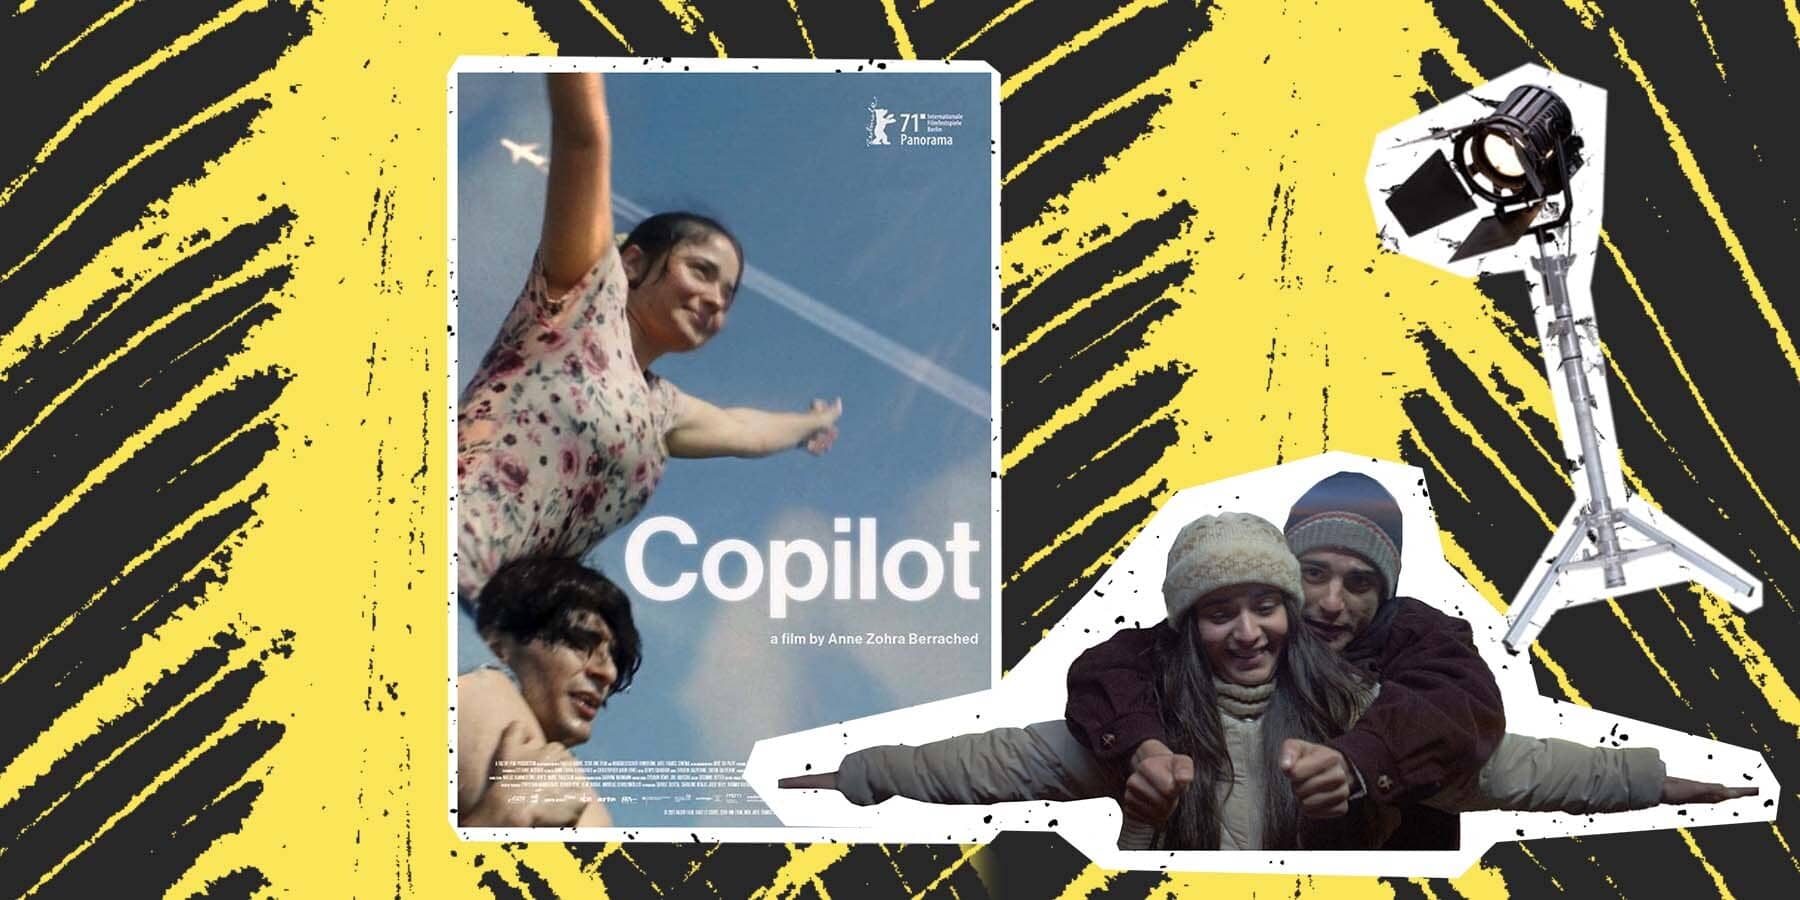 Copilot film poster